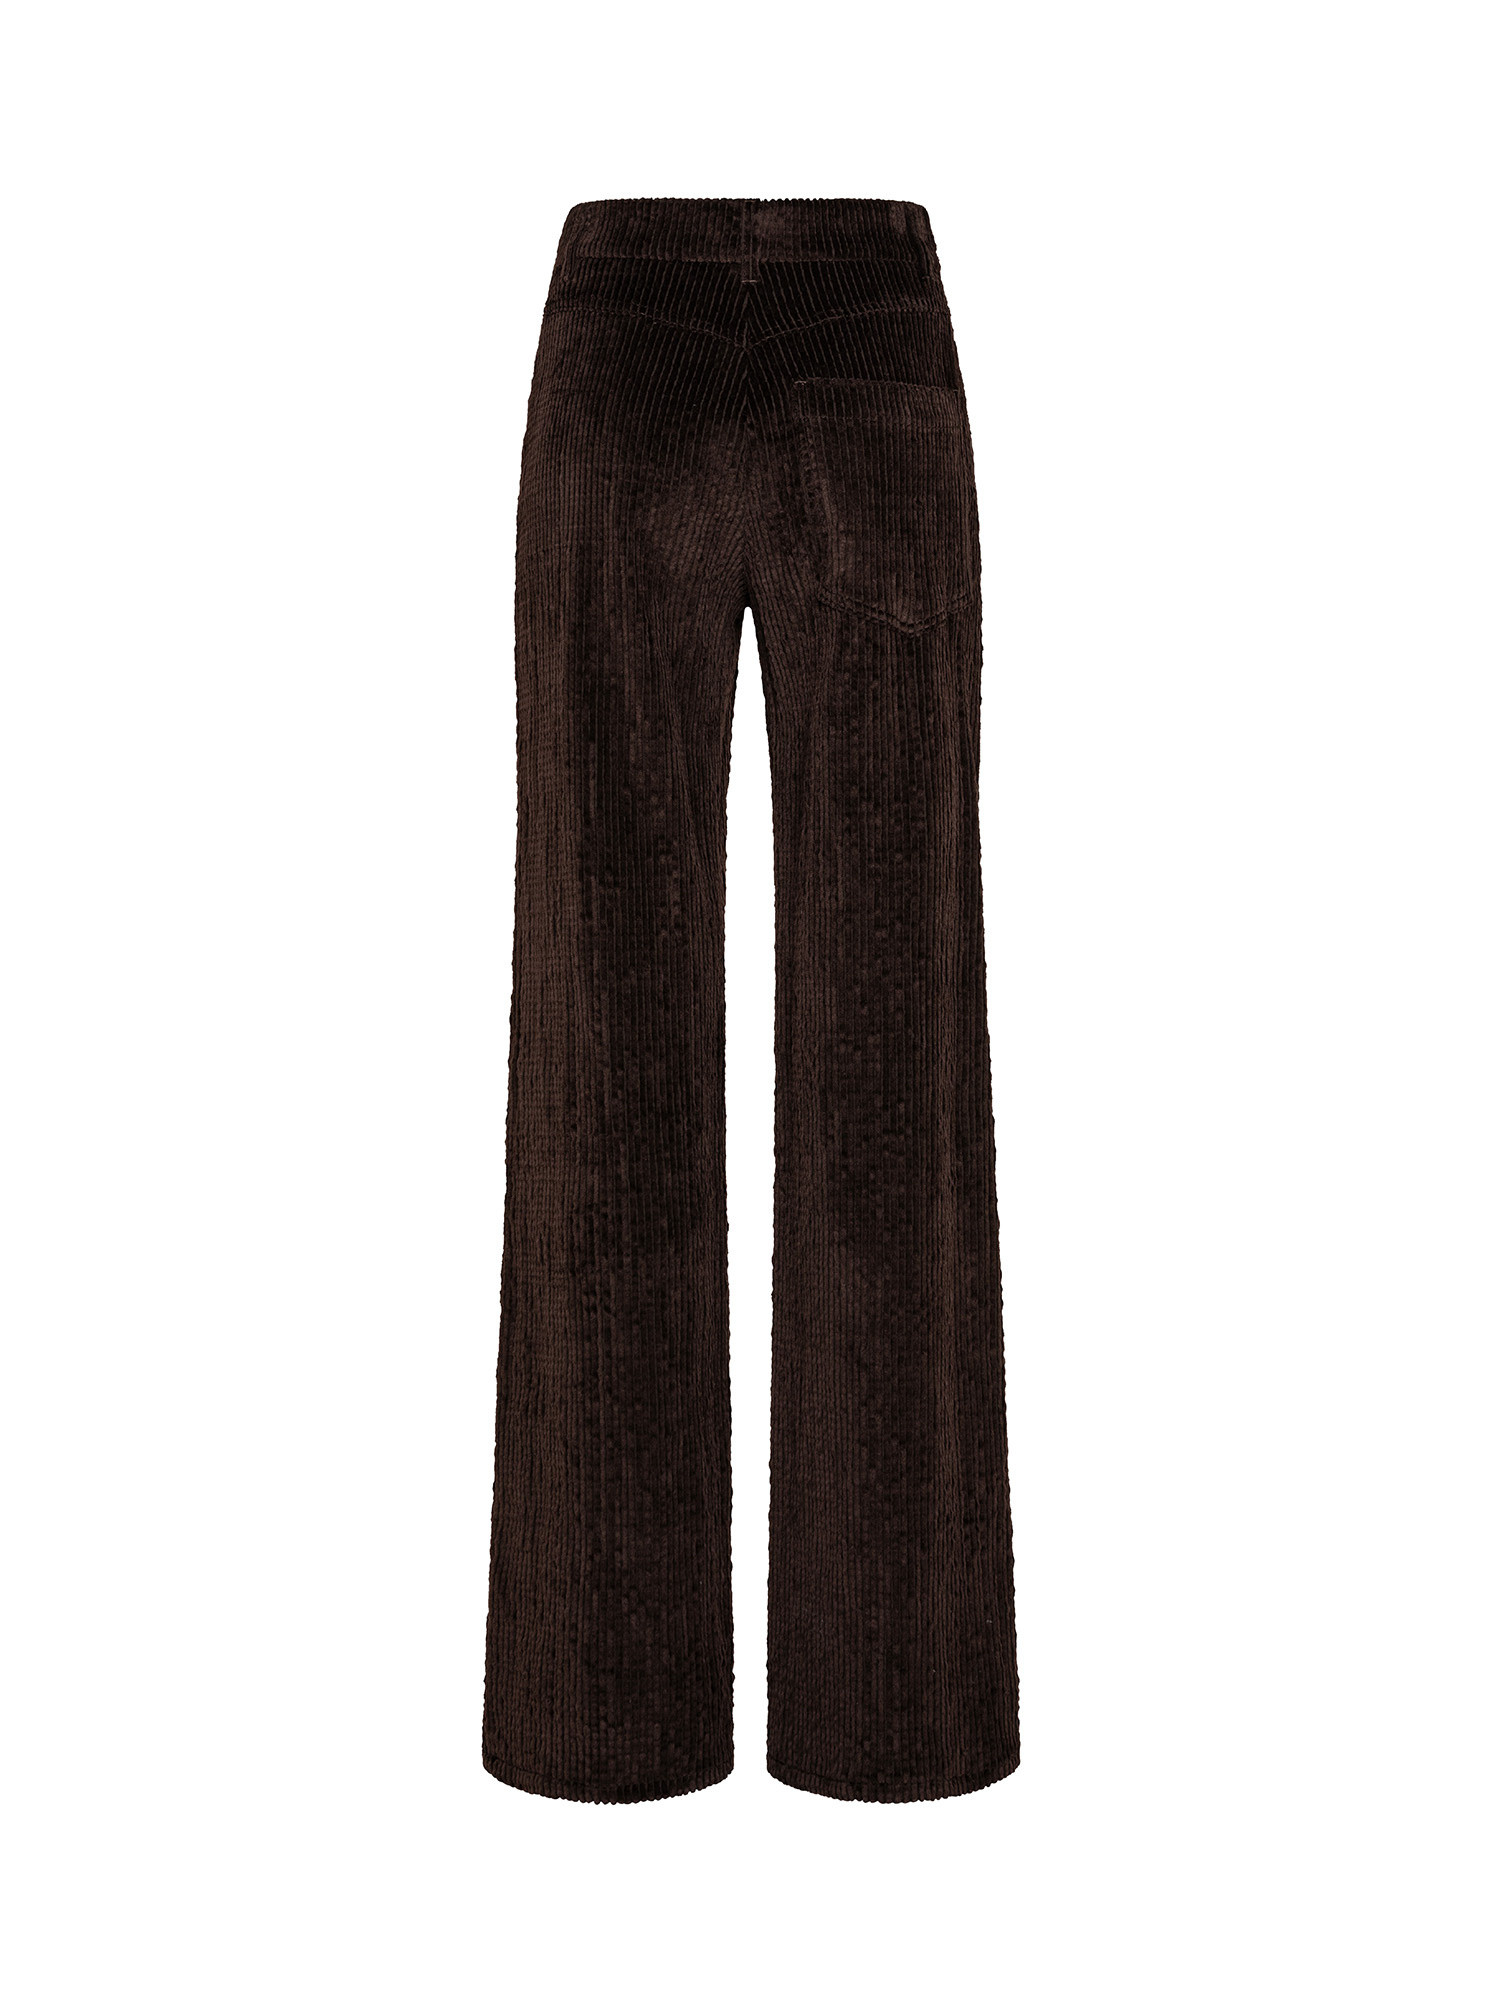 Pantalone a gamba svasata in velluto, Brown, large image number 1